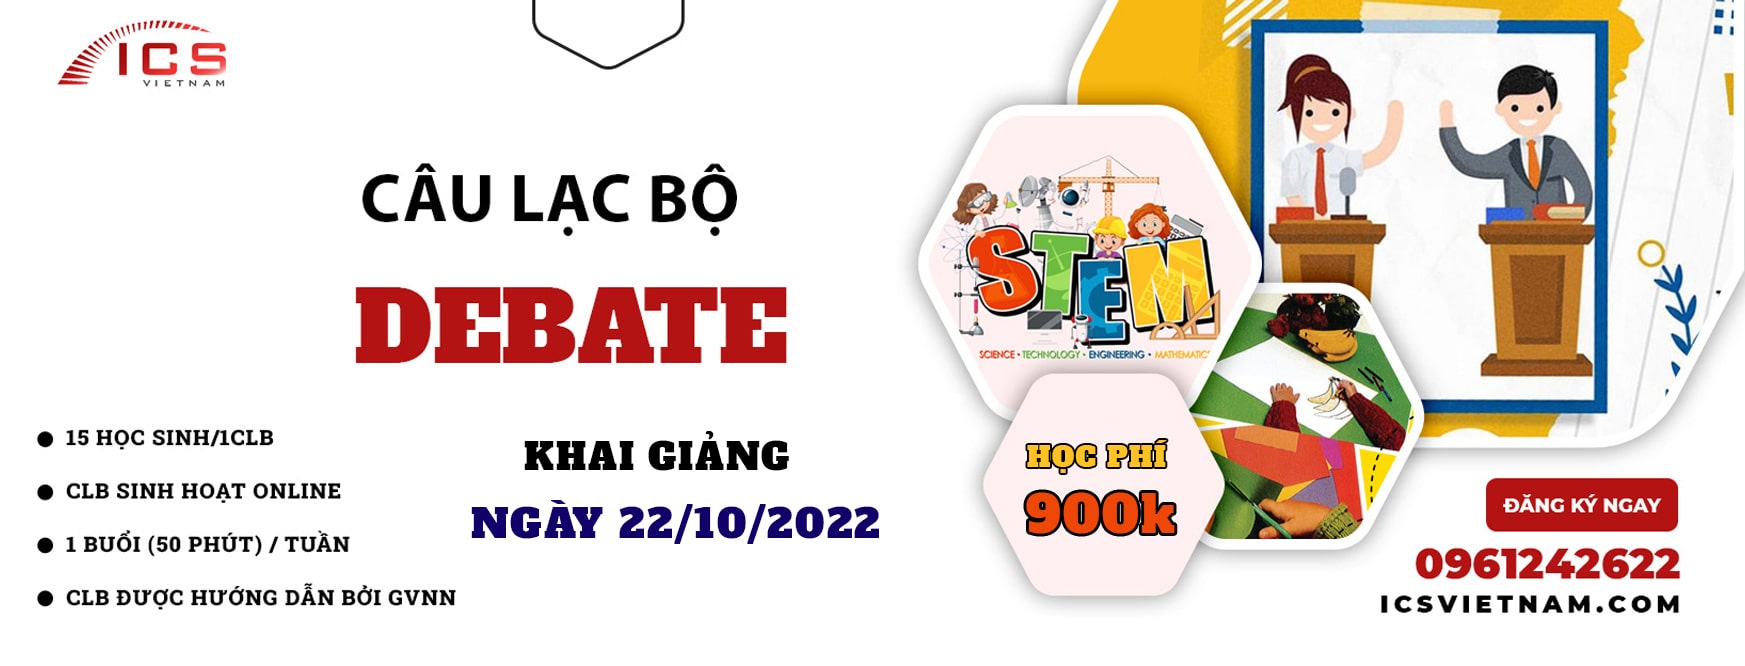 Khai giảng CLB Debate ngày 22-10-2022